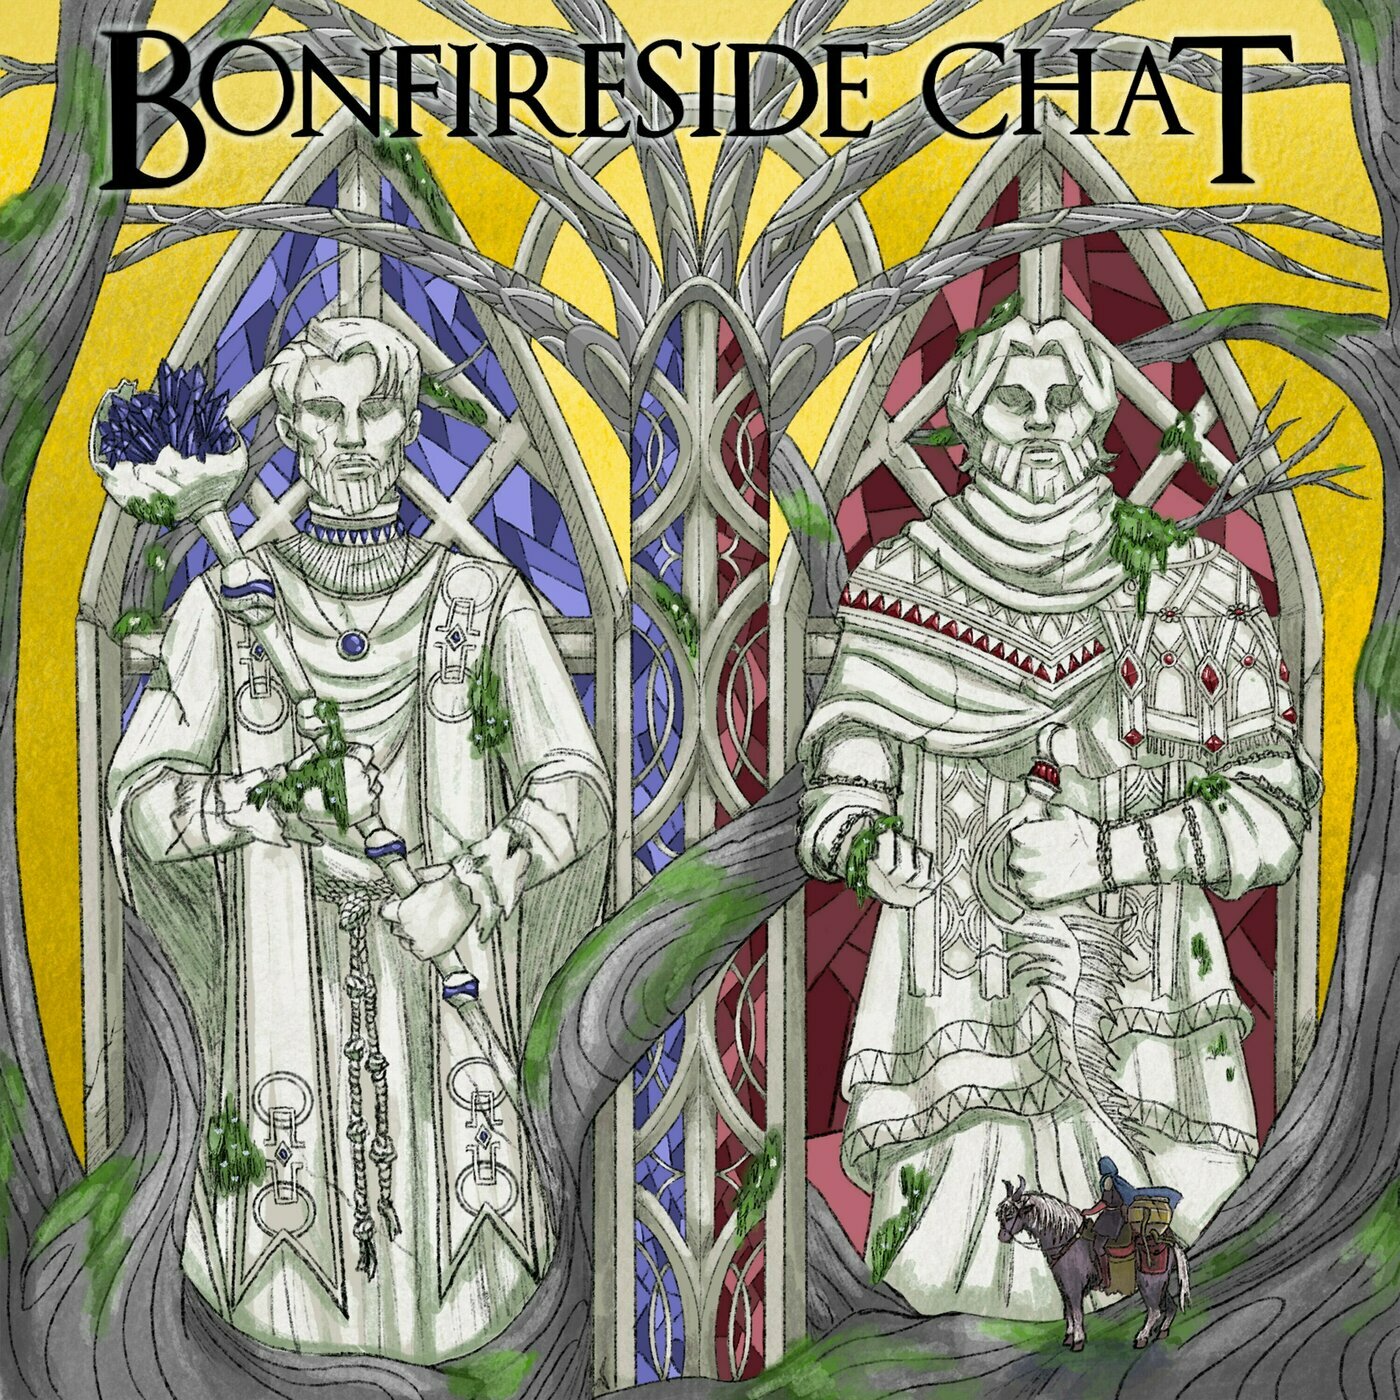 www.bonfireside.chat